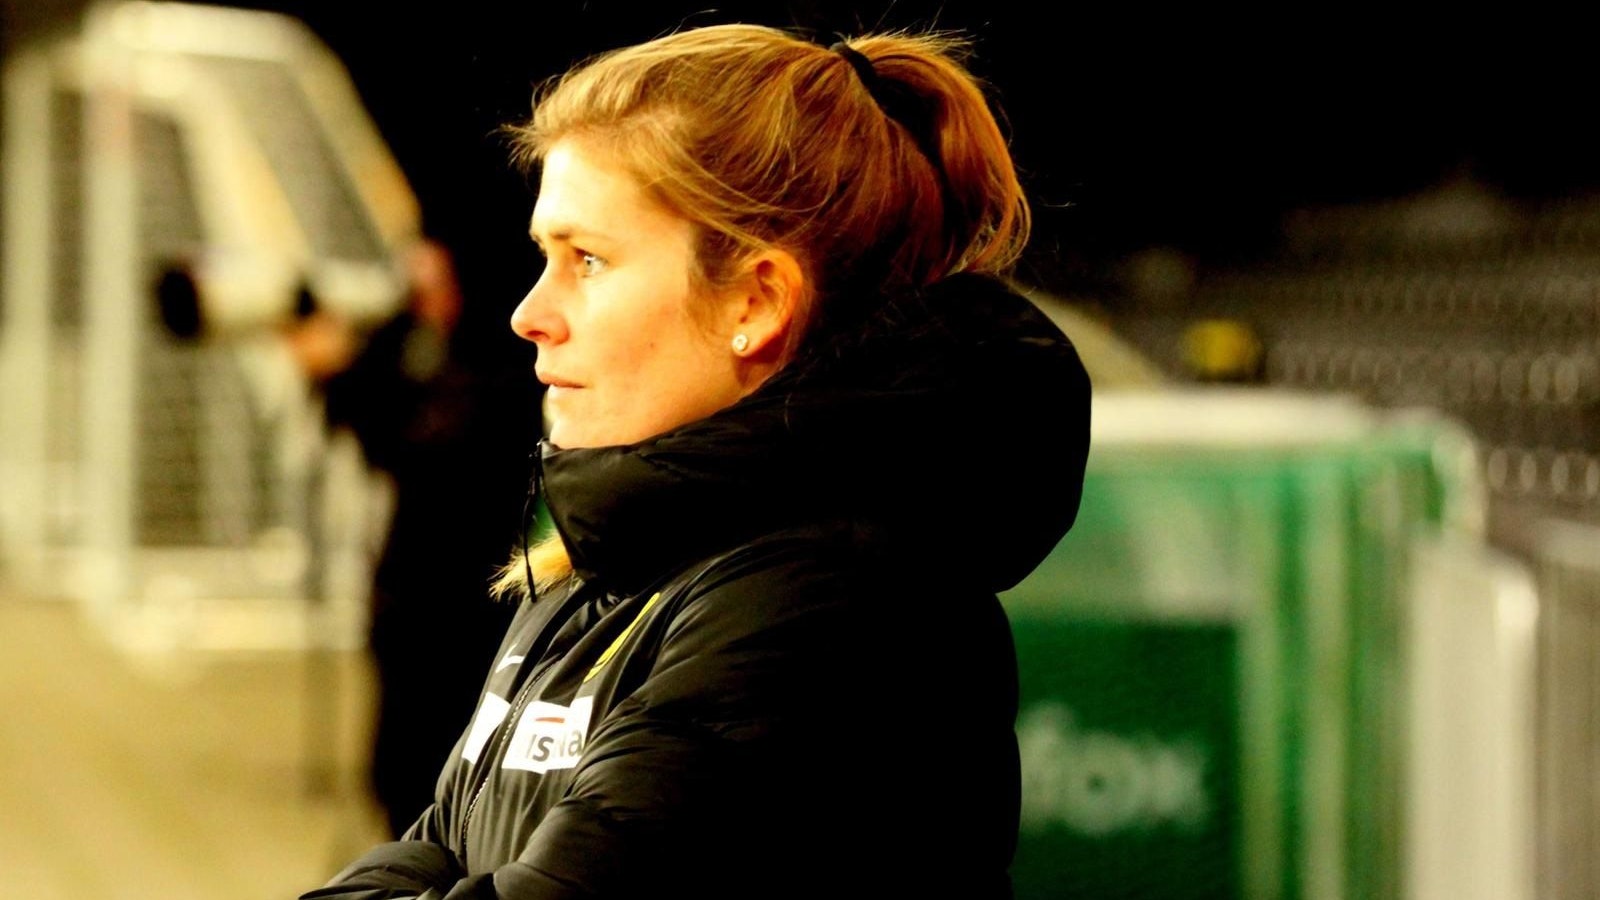 Immer engagiert: Imke Wübbenhorst als Trainerin der Frauenmannschaft der Young Boys Bern. Foto: Archiv Wübbenhorst